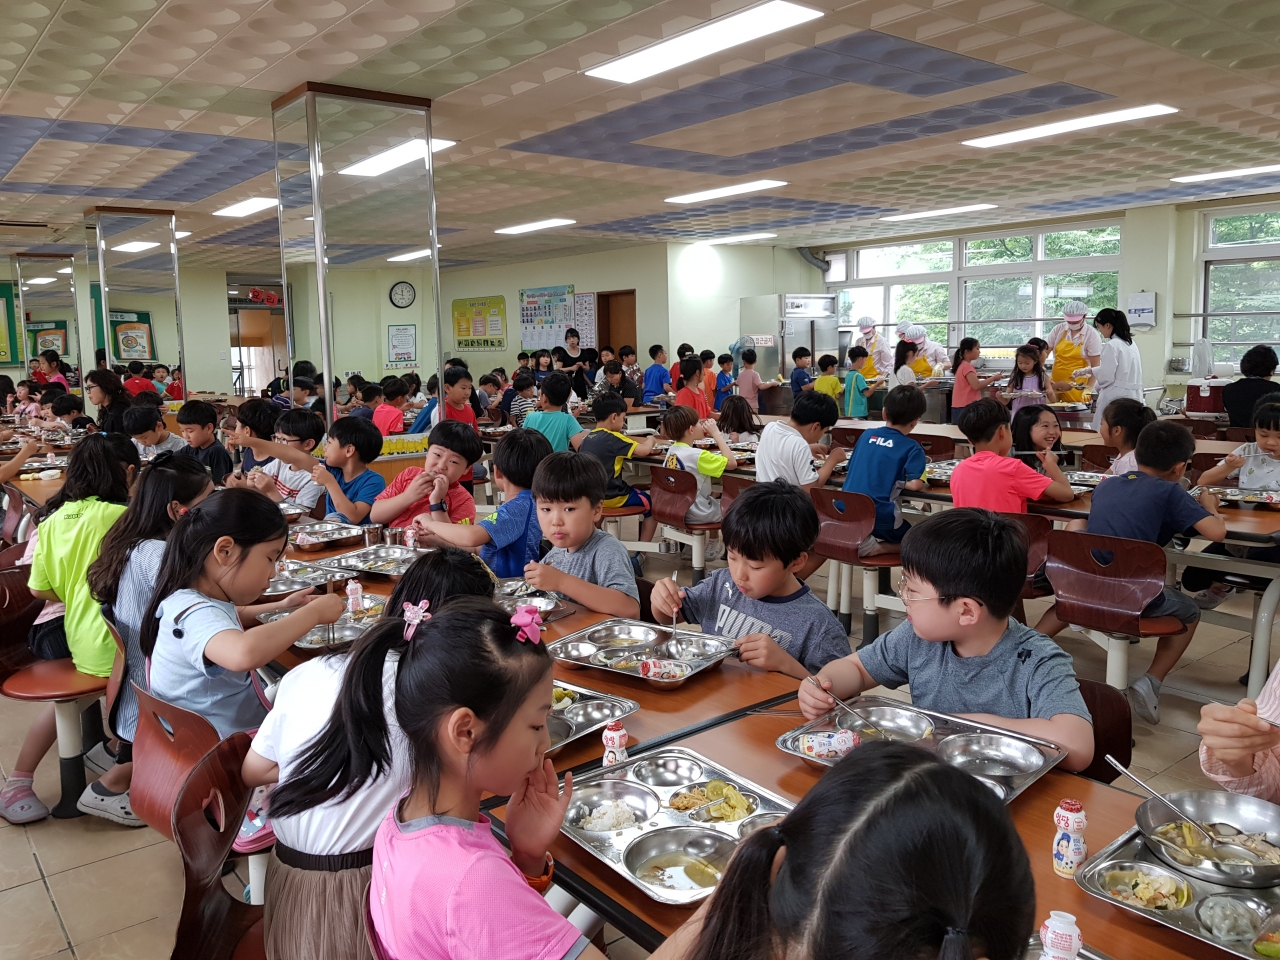 청주남평초 어린이들이 25일 학교급식실에서 점심메뉴로 제공된 북한 음식을 먹고 있다. / 청주교육지원청 제공